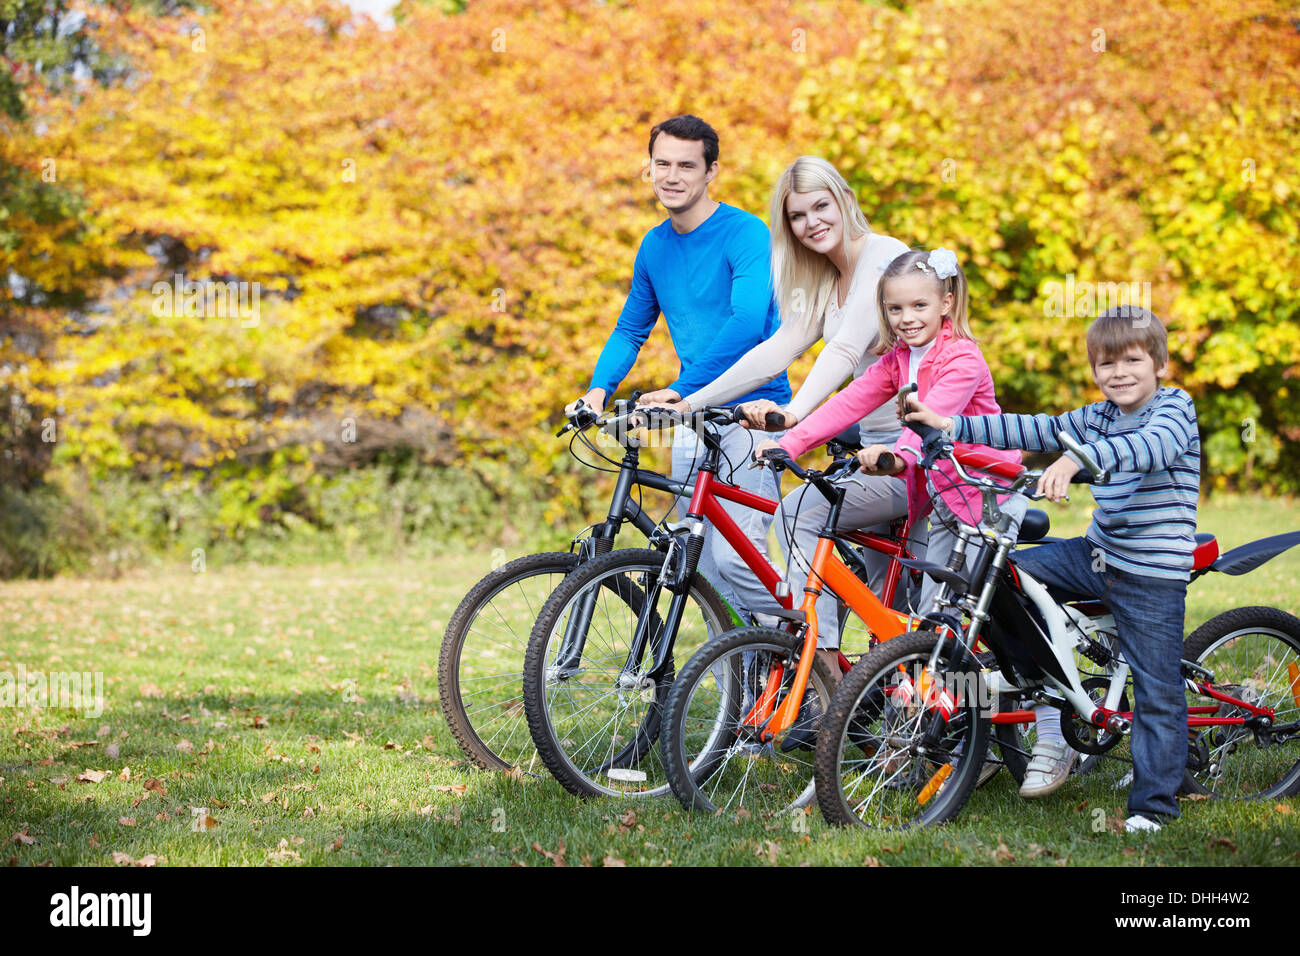 Велосемья. Велосипеды для всей семьи. Семья на велосипедах. Семья с детьми на велосипедах. Семейные велосипедные прогулки.